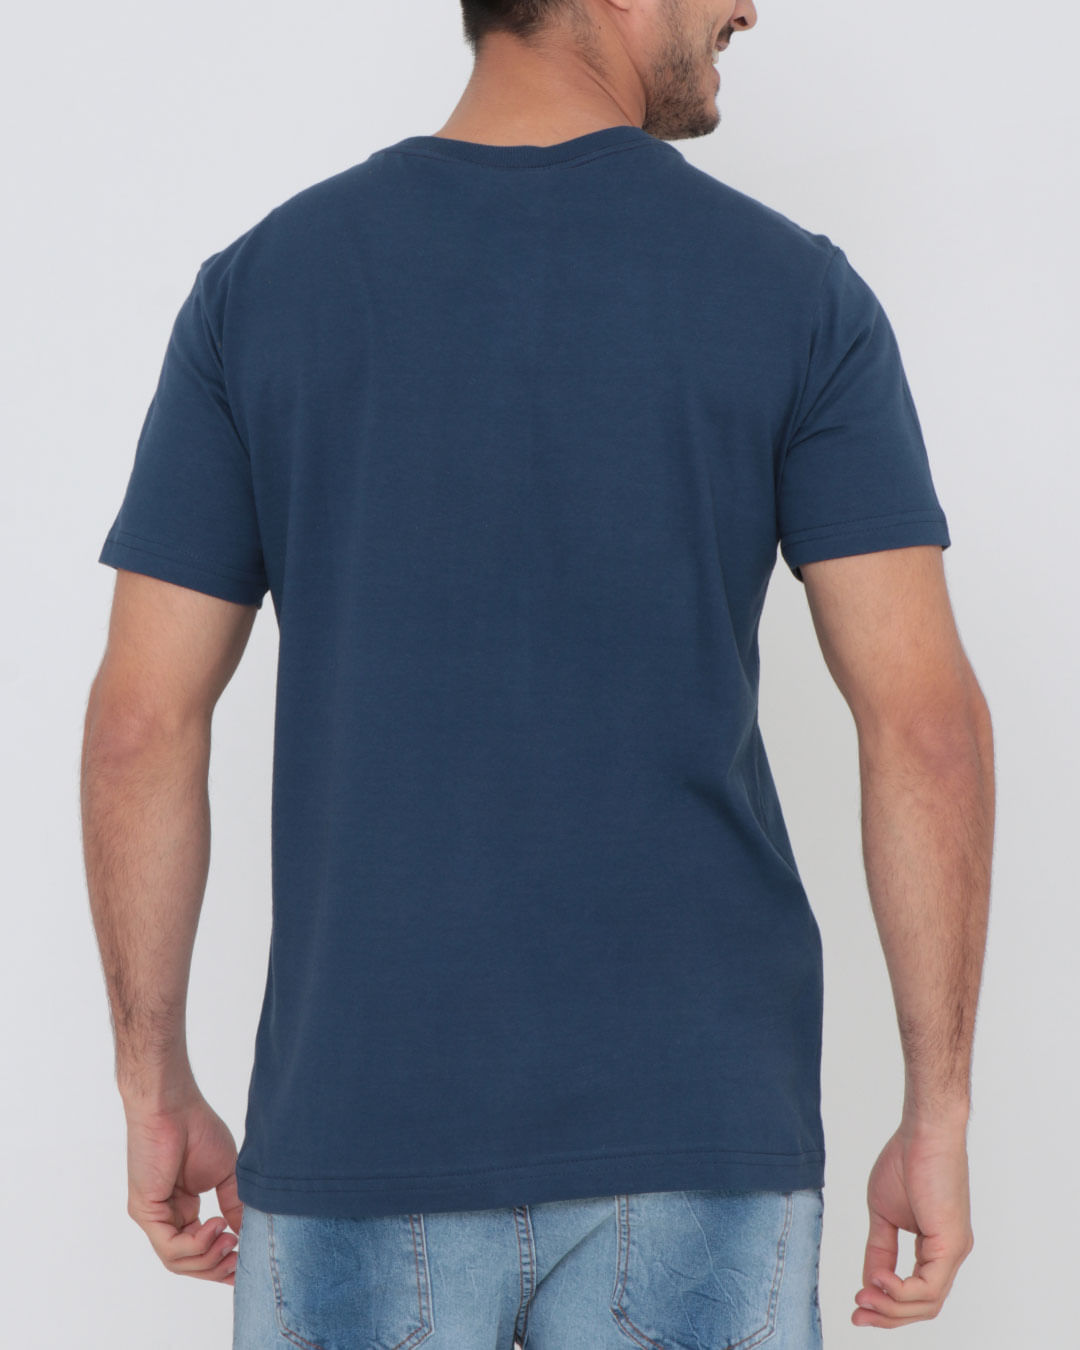 Camiseta-Estampa-Ecko-Azul-Marinho